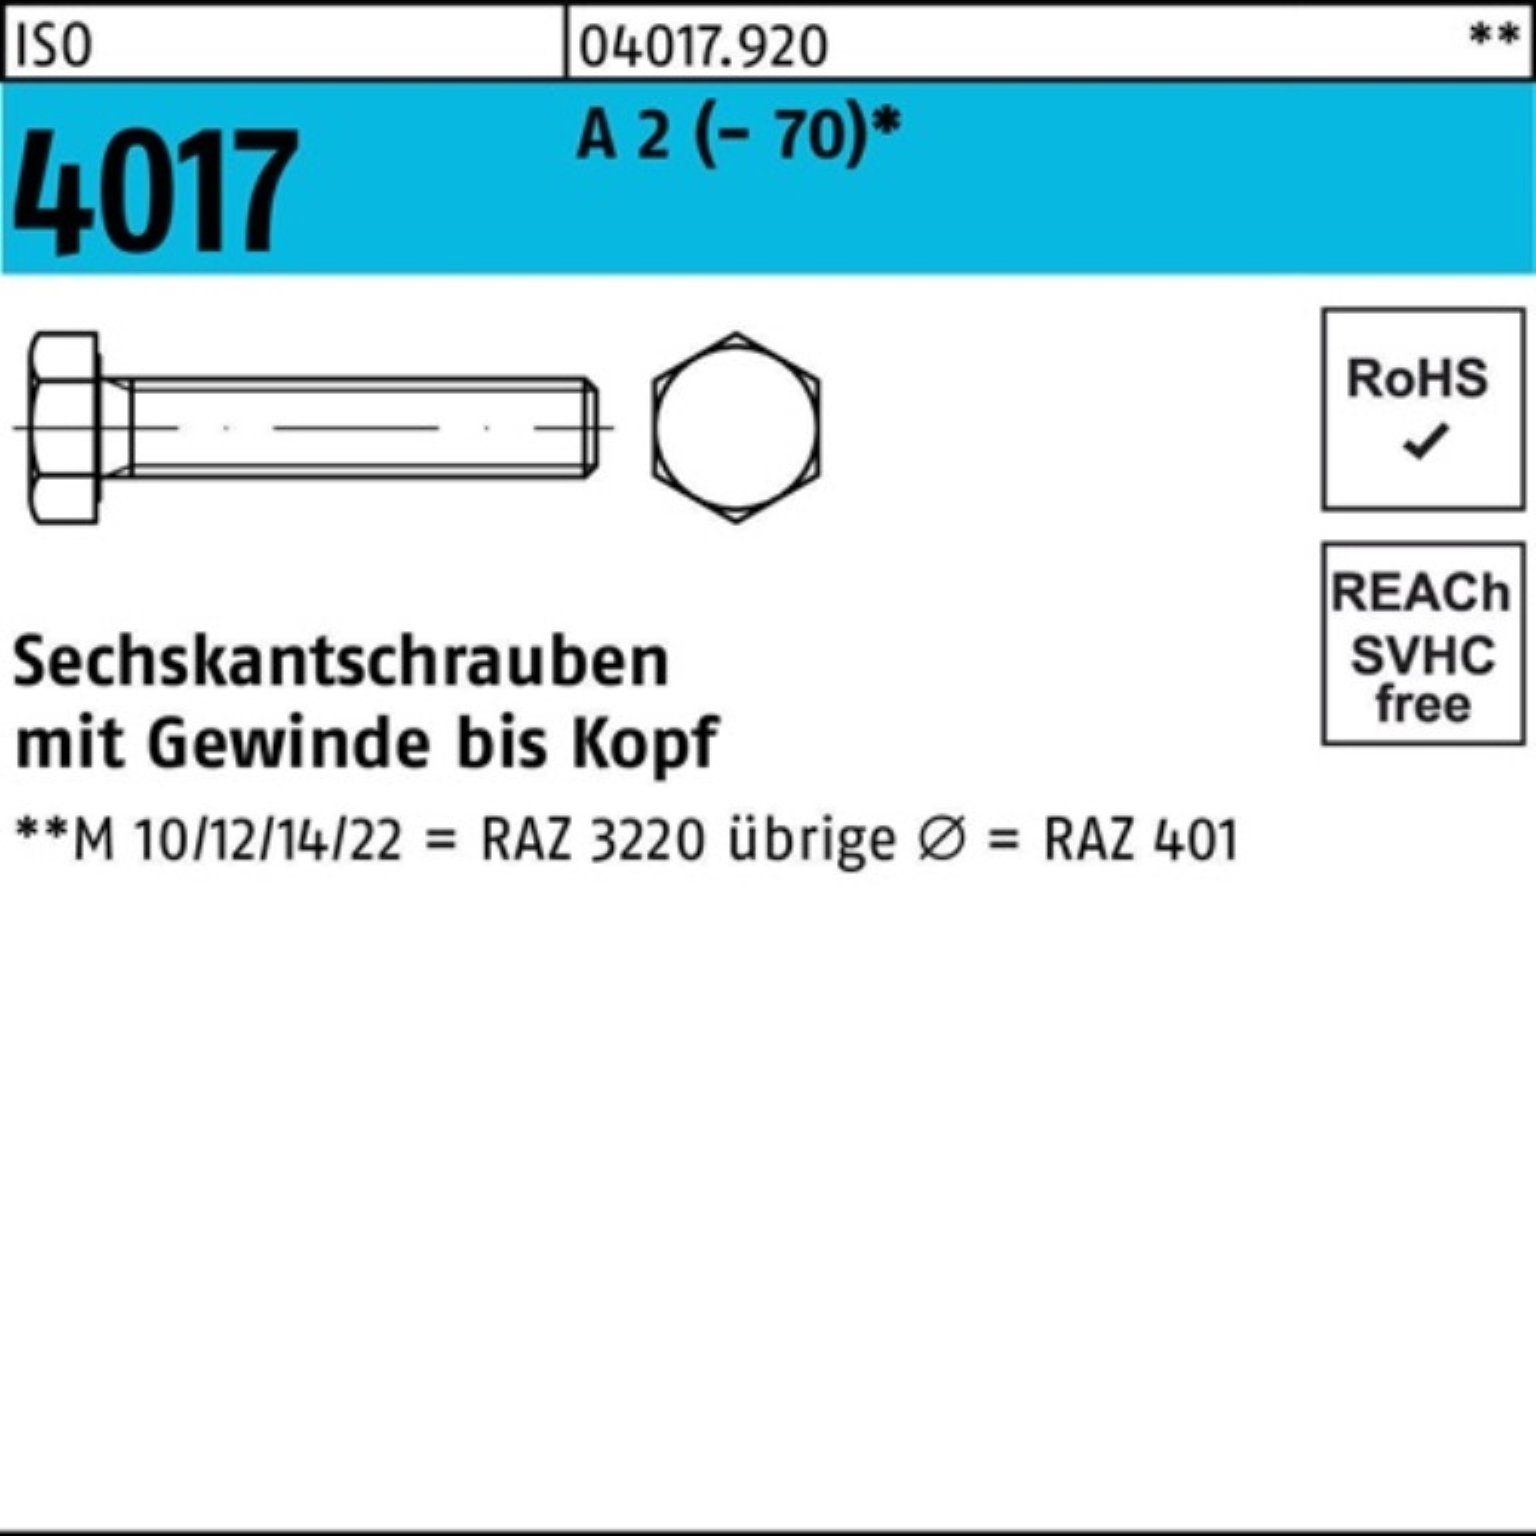 Bufab Sechskantschraube 100er Pack Sechskantschraube ISO 4017 VG M20x 180 A 2 (70) 10 Stück